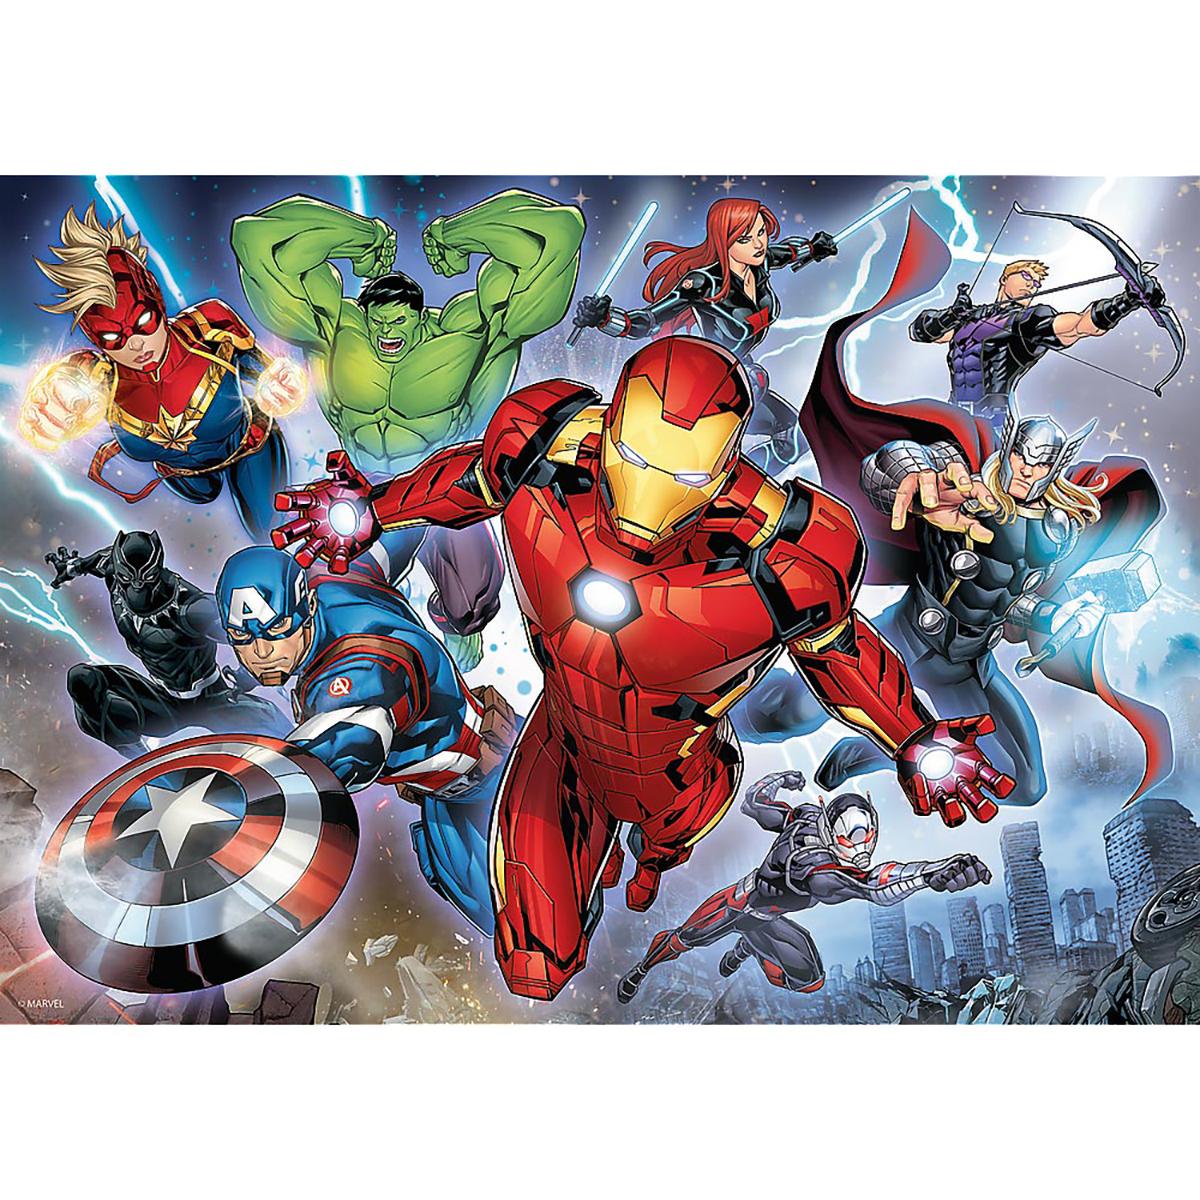 TREFL Marvel Avengers 200 Teile - Puzzle Puzzle